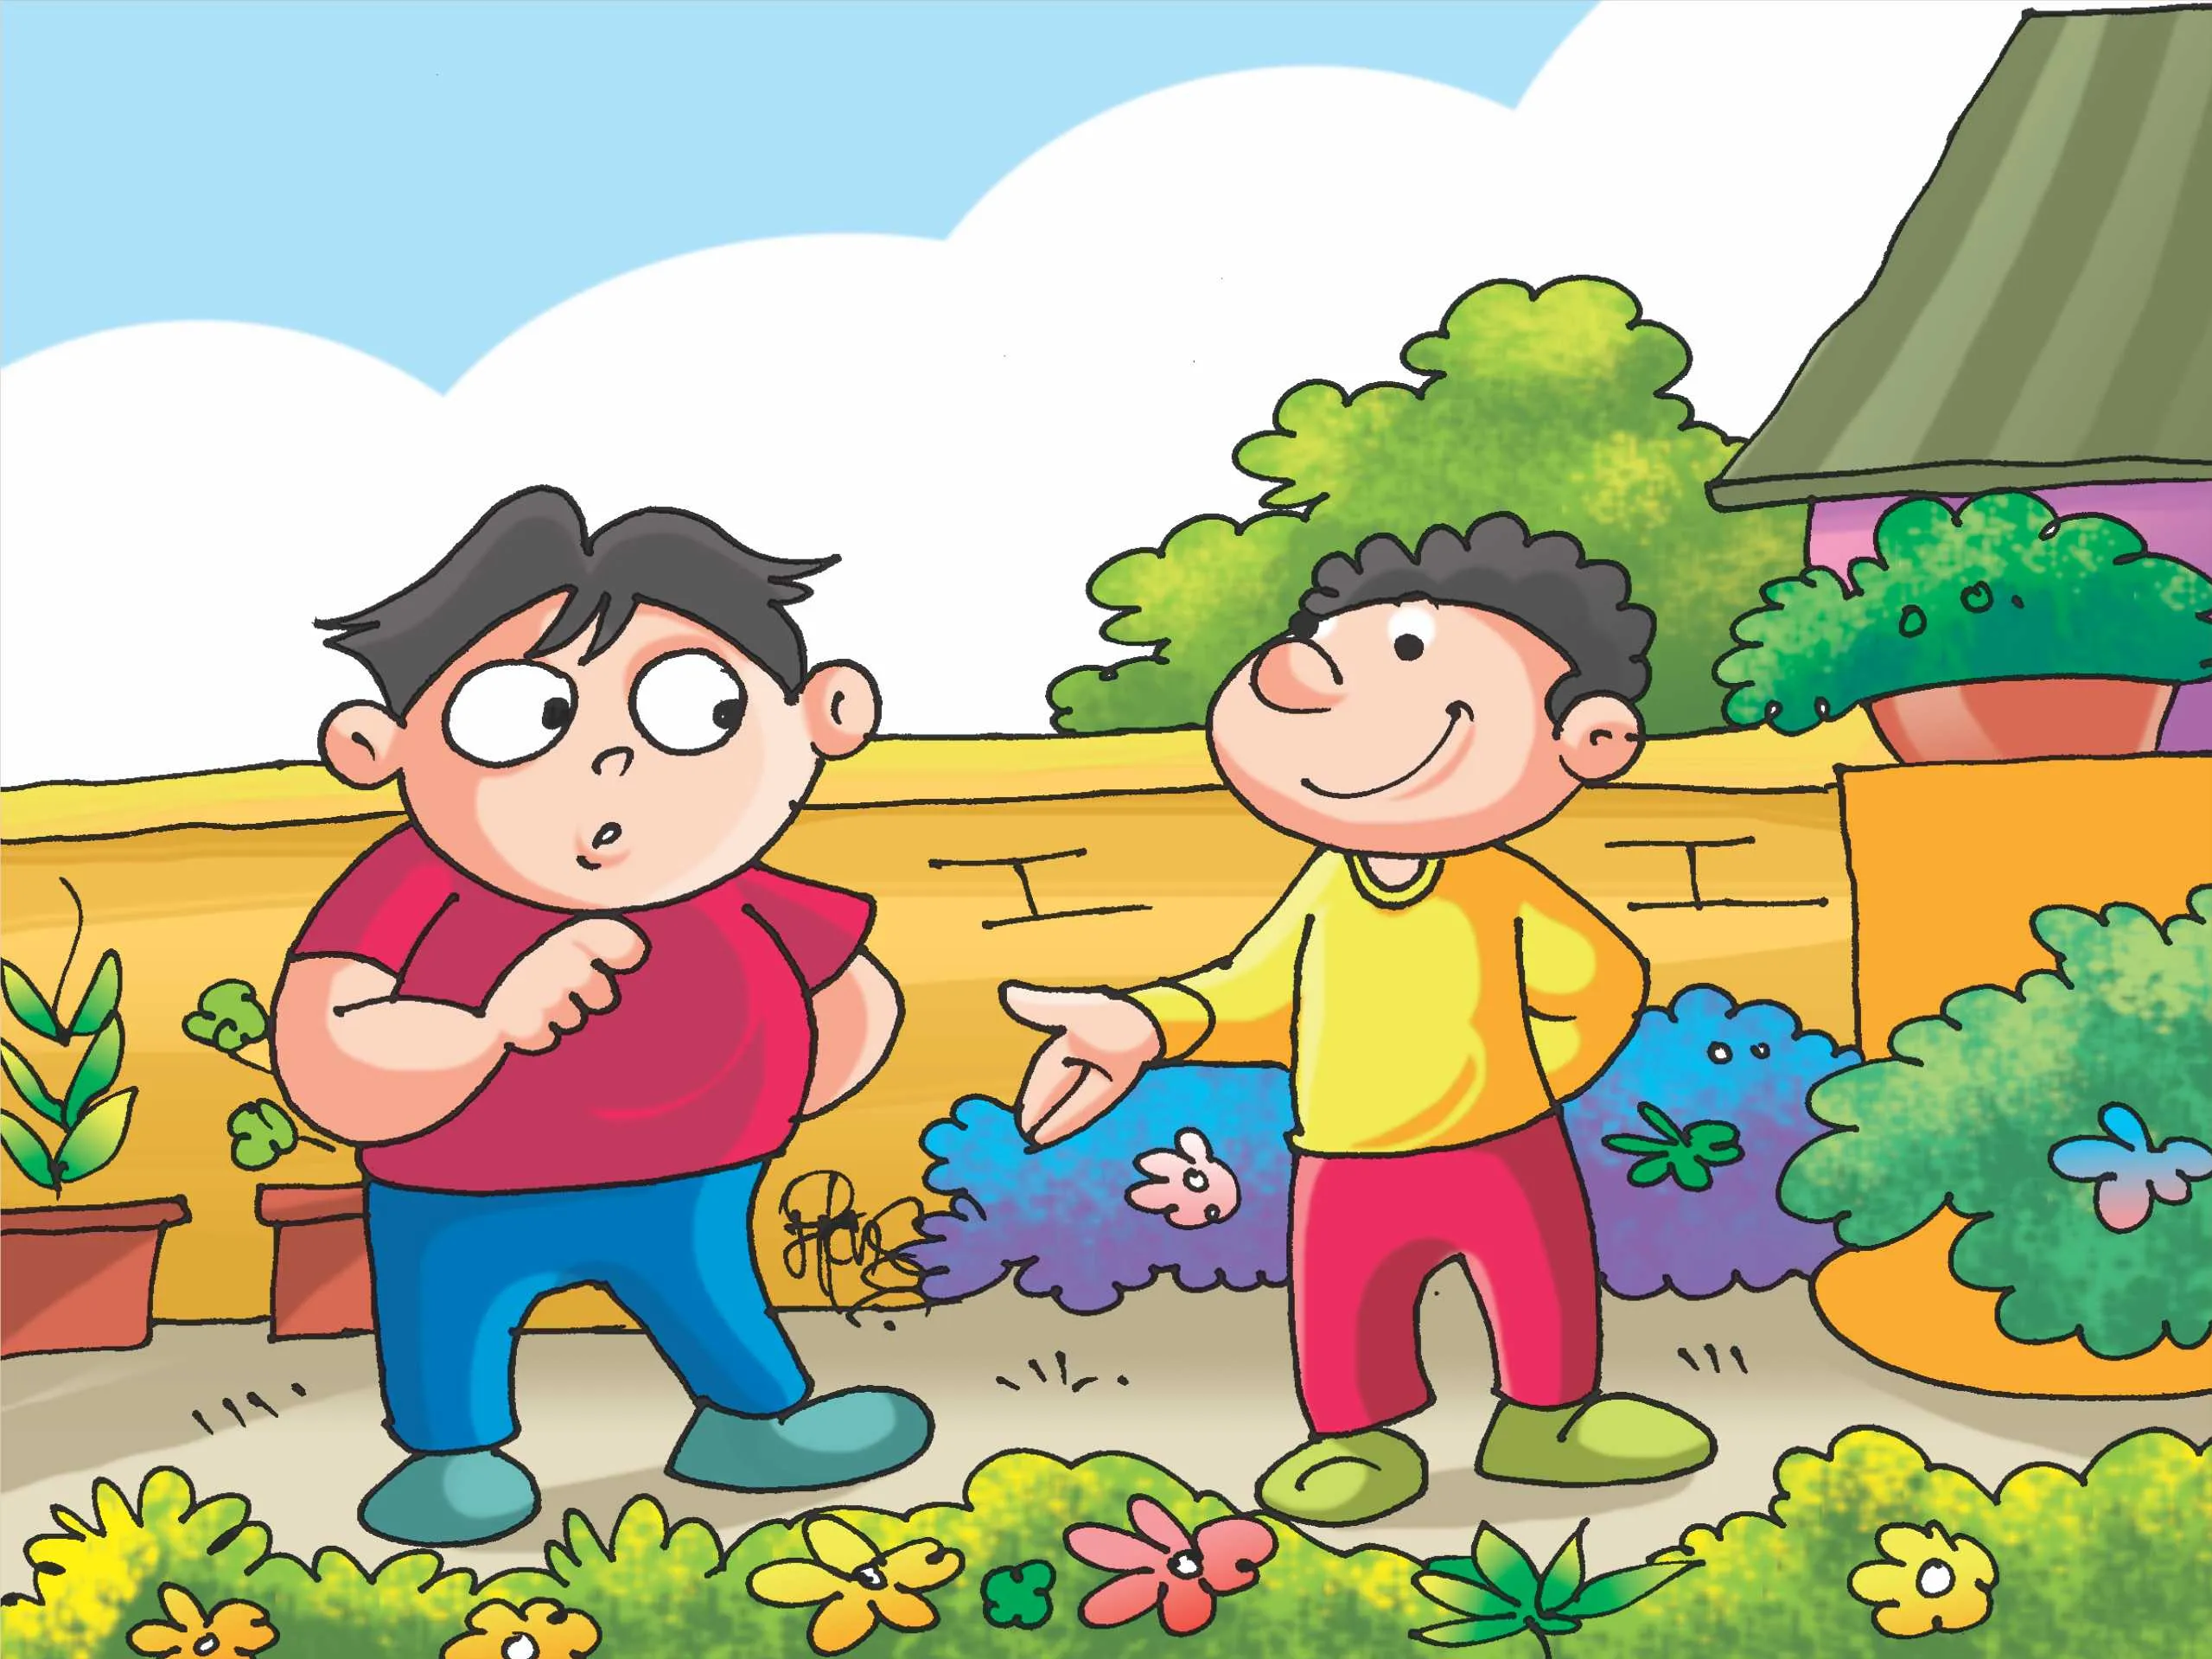 Two Kids Talking in garden cartoon image